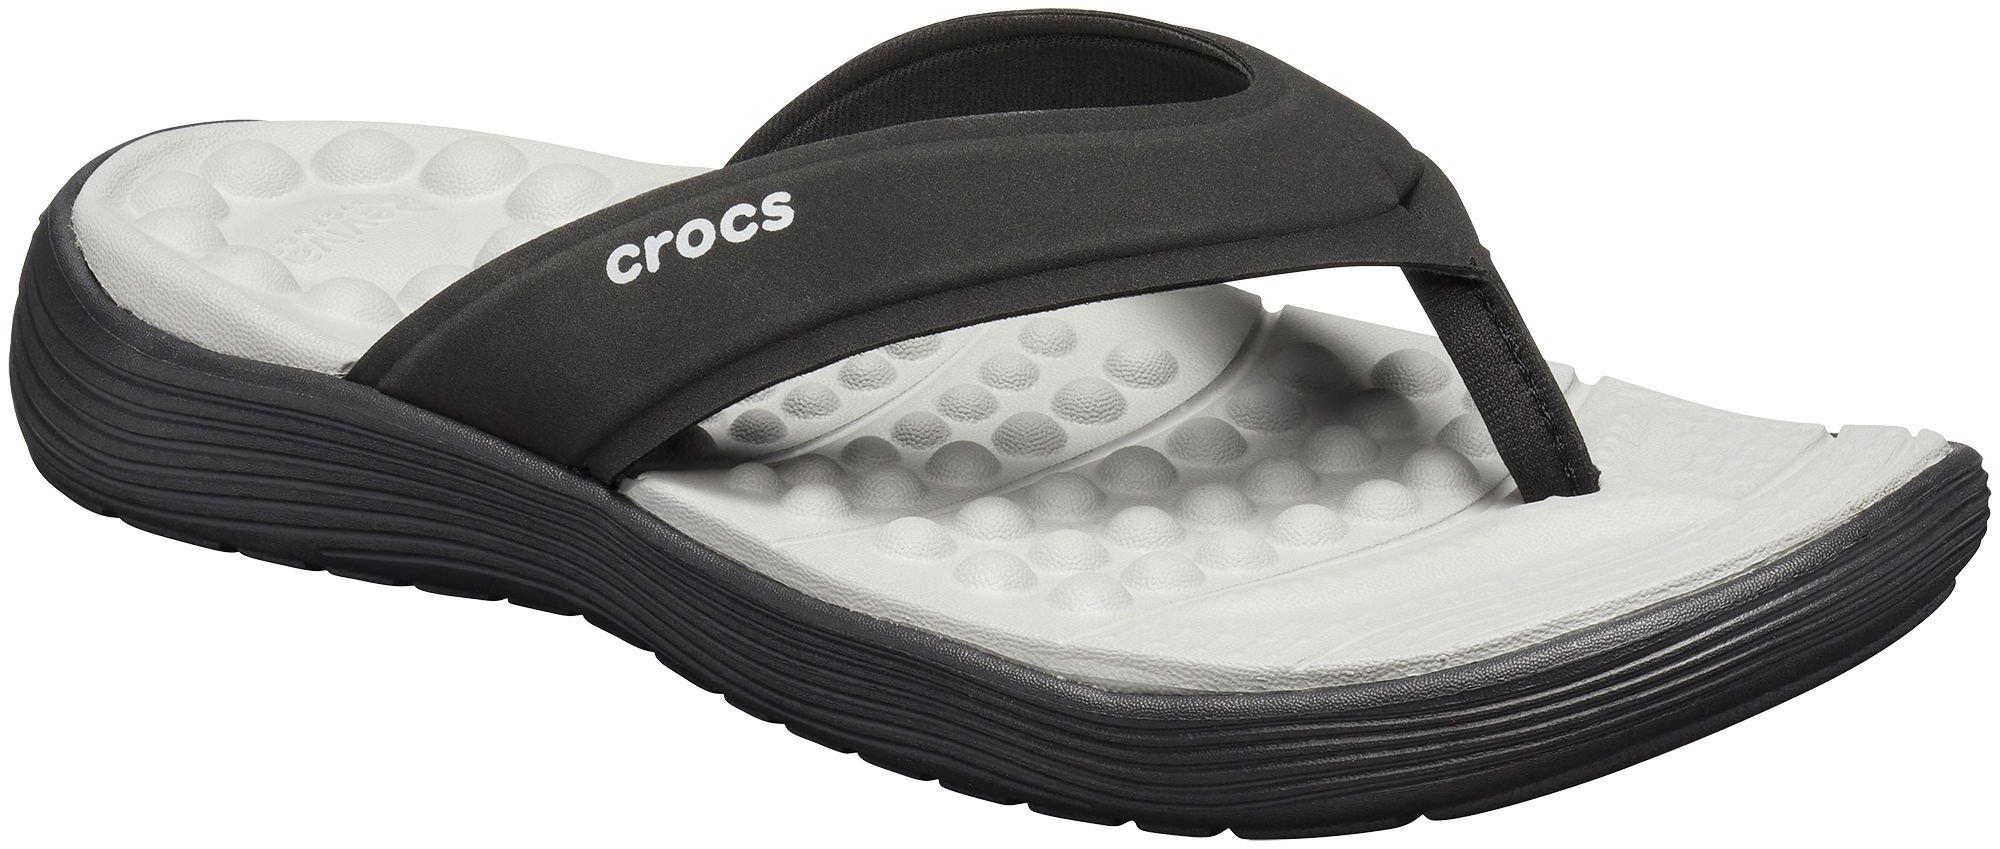 crocs thongs womens